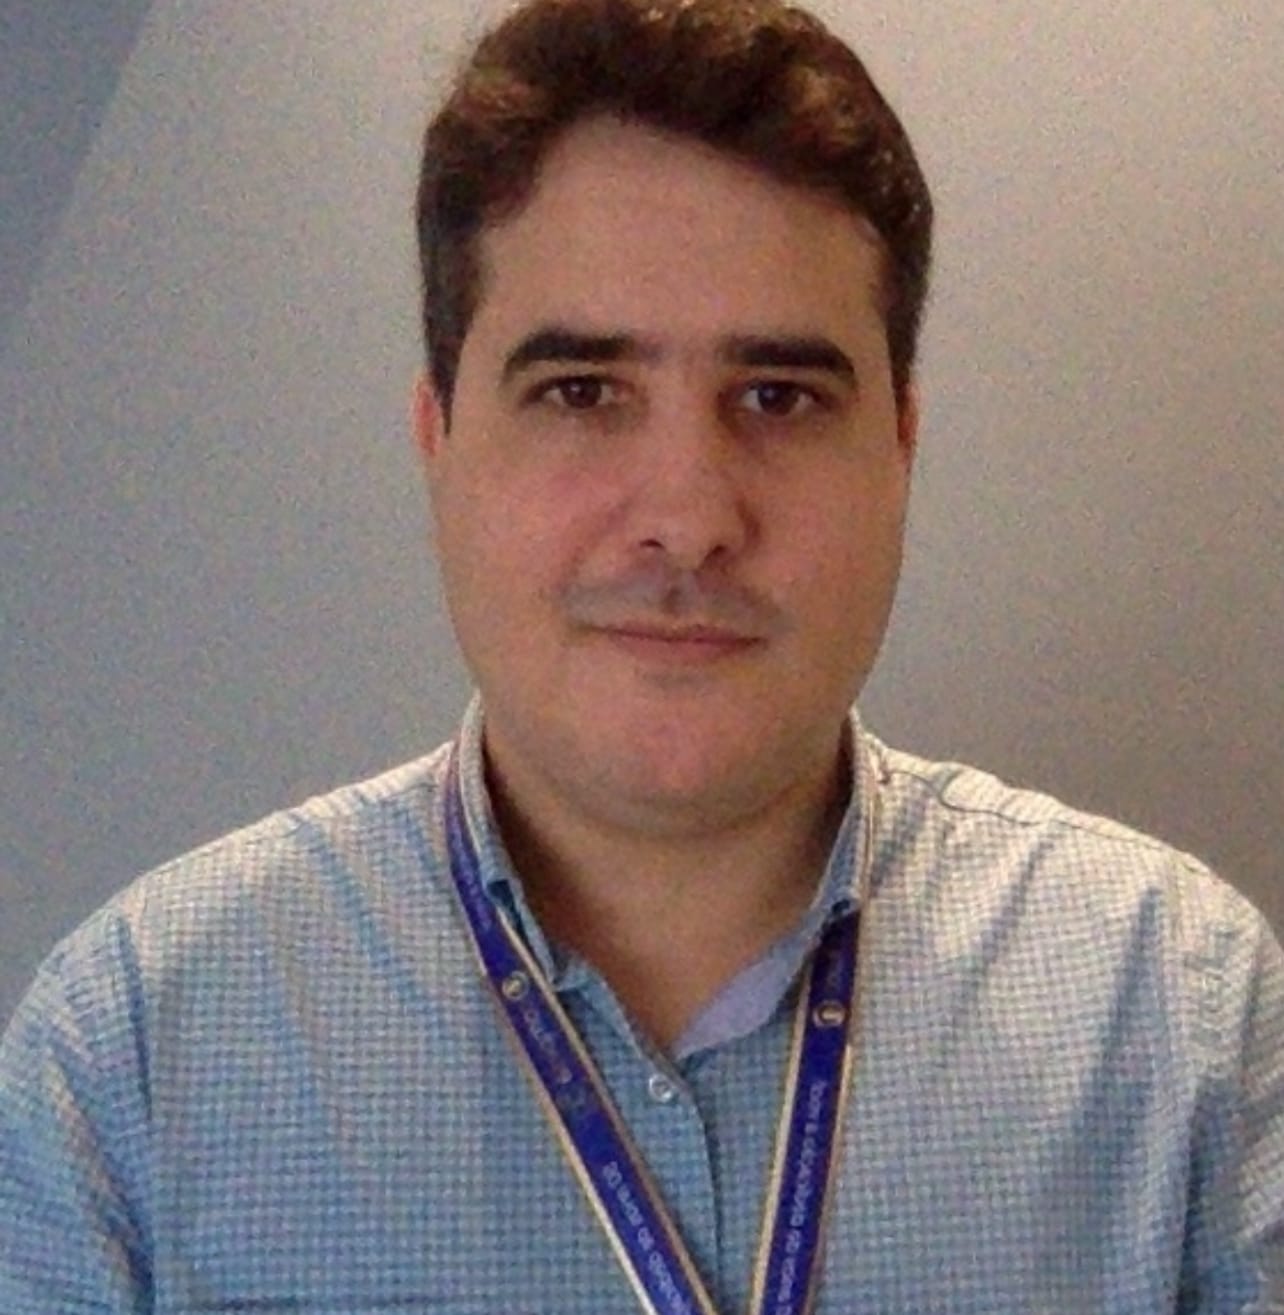 Antonio Lucena - Engenheiro de Telecomunicações, formado em 2007 pela UniJorge/BA, Especialista em Rede de Dados, trabalhou na Embratel como Analista de Serviços, e desde 2013 assumiu o cargo de Analista de Saneamento na Compesa, foi coordenador do Centro de Controle Operacional, e desde 2019 é o Gestor da Gerência de Automação da Compesa.